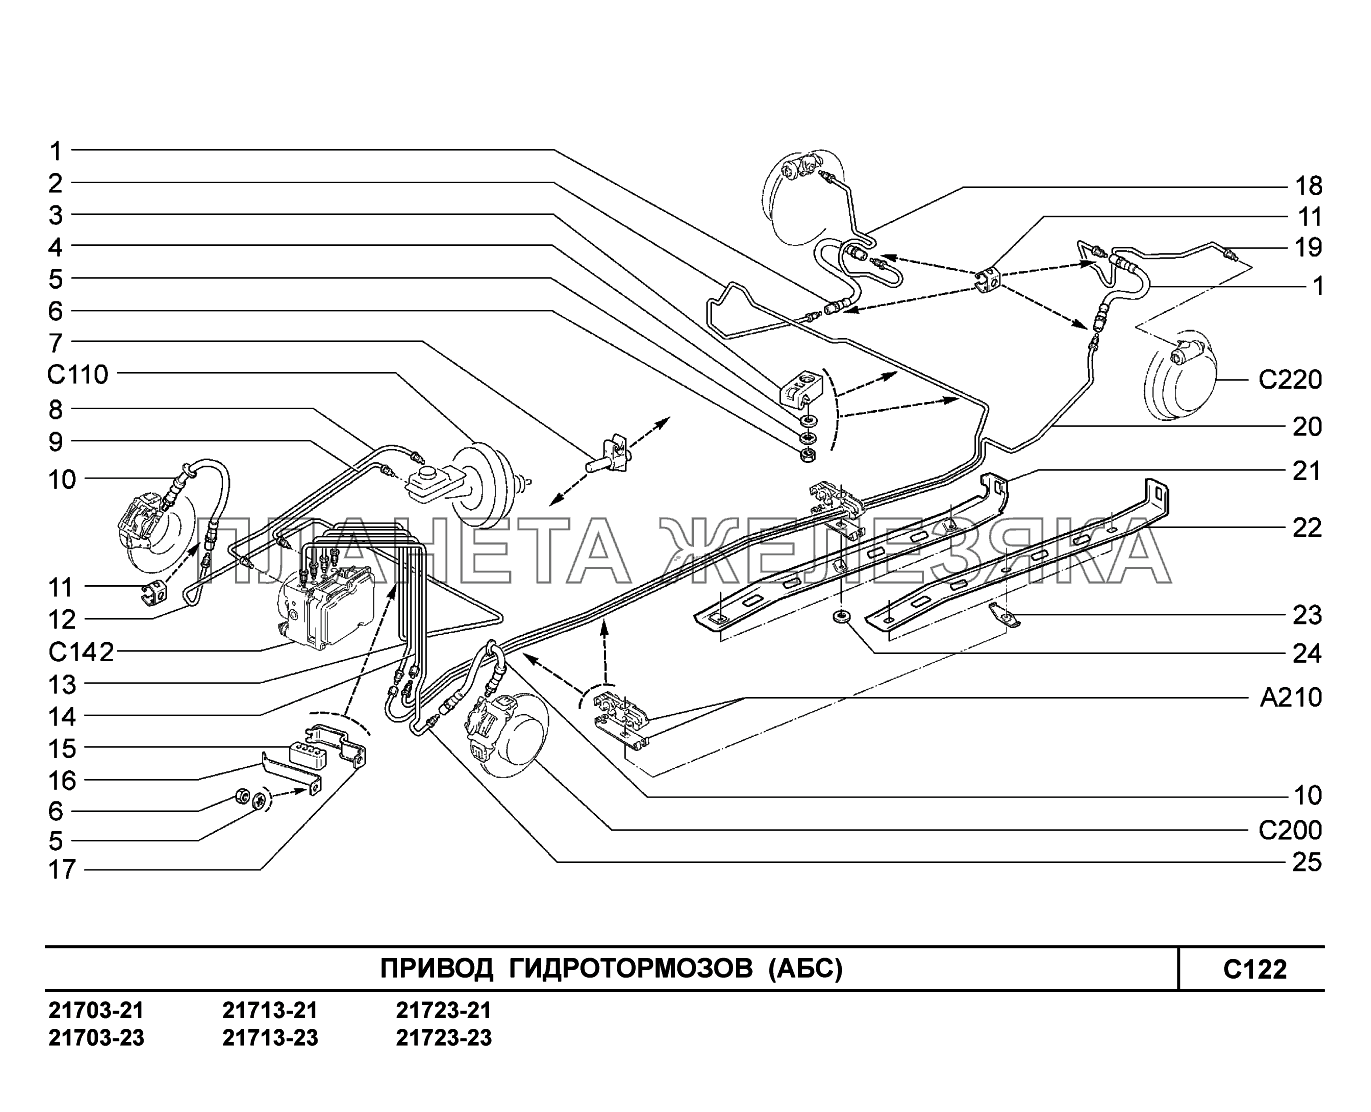 C122. Привод гидротормозов ВАЗ-2170 